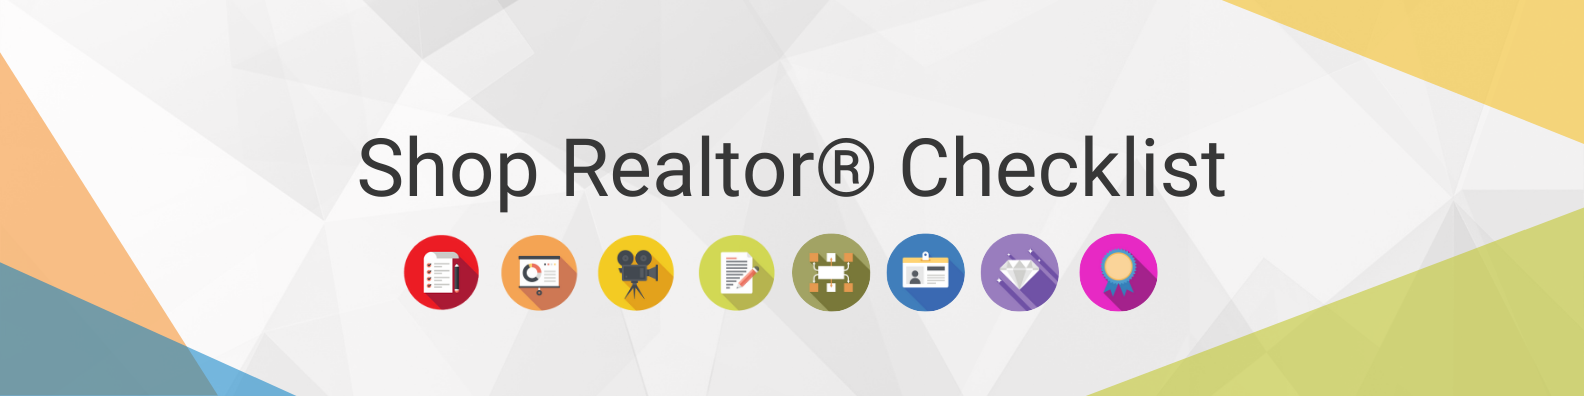 Shop Realtor® Checklist (3)